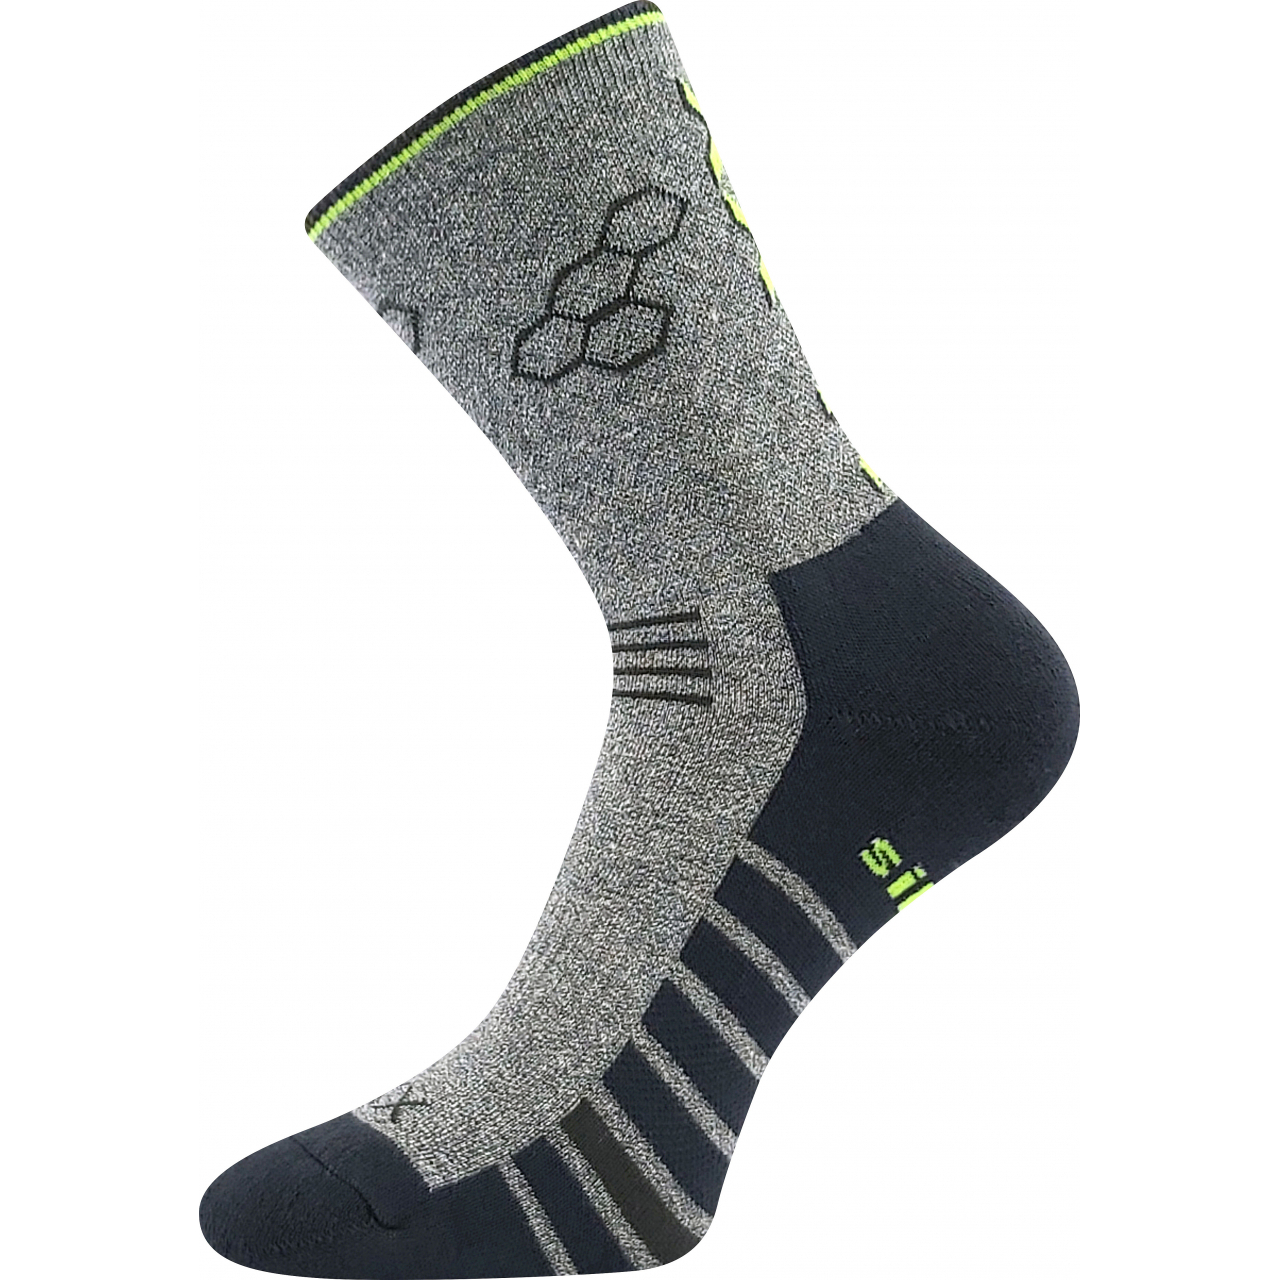 Ponožky sportovní unisex Voxx Virgo - šedé-černé, 43-46